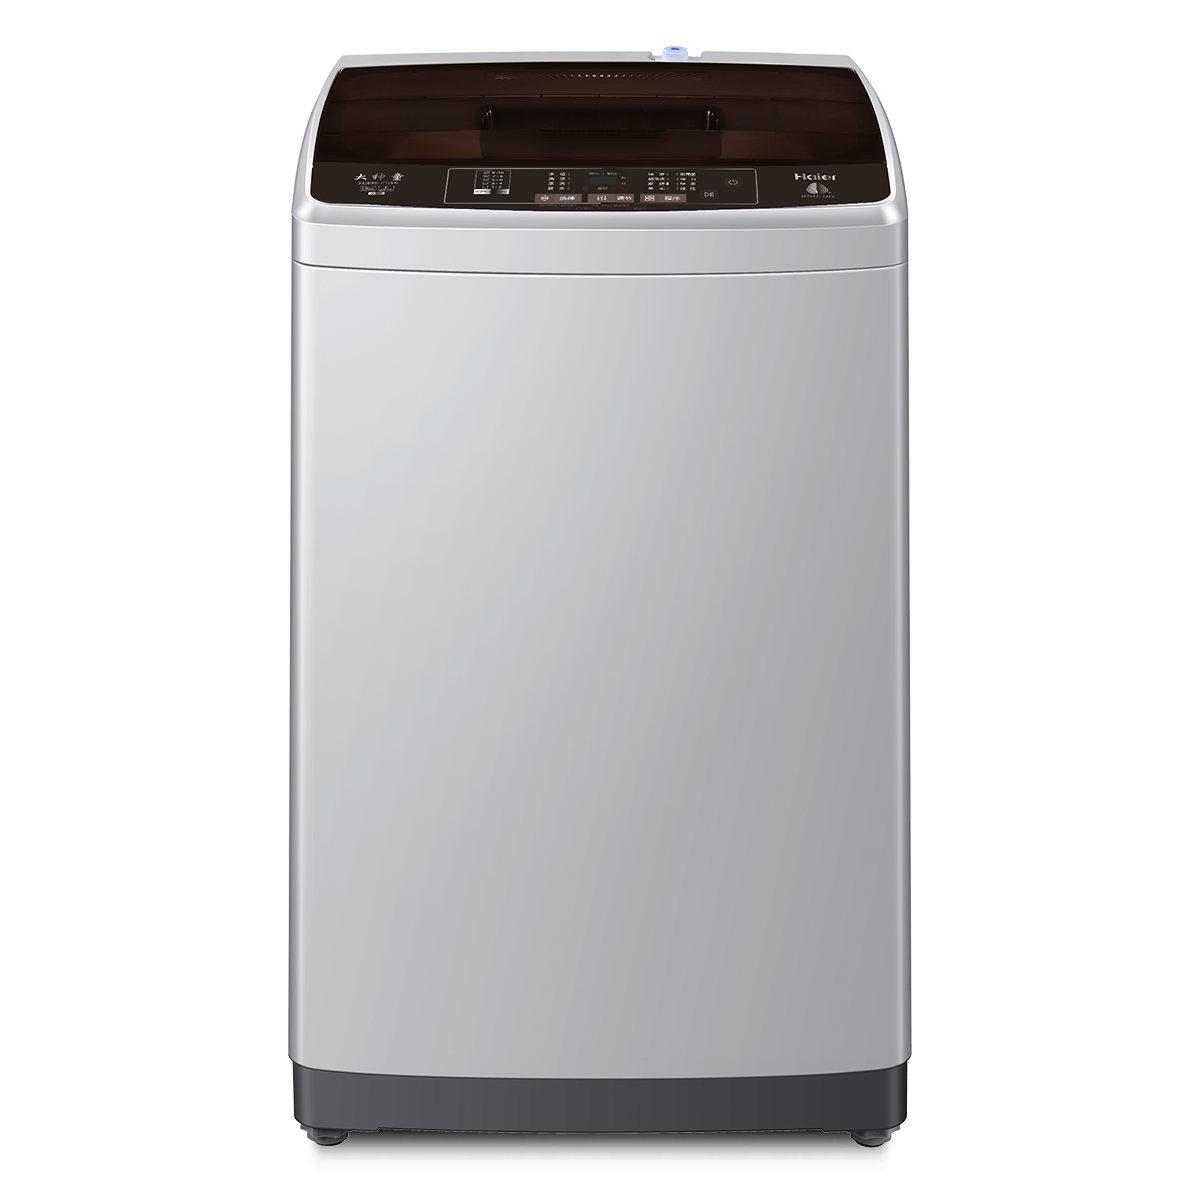 海尔Haier洗衣机 XQB80-Z1269 说明书